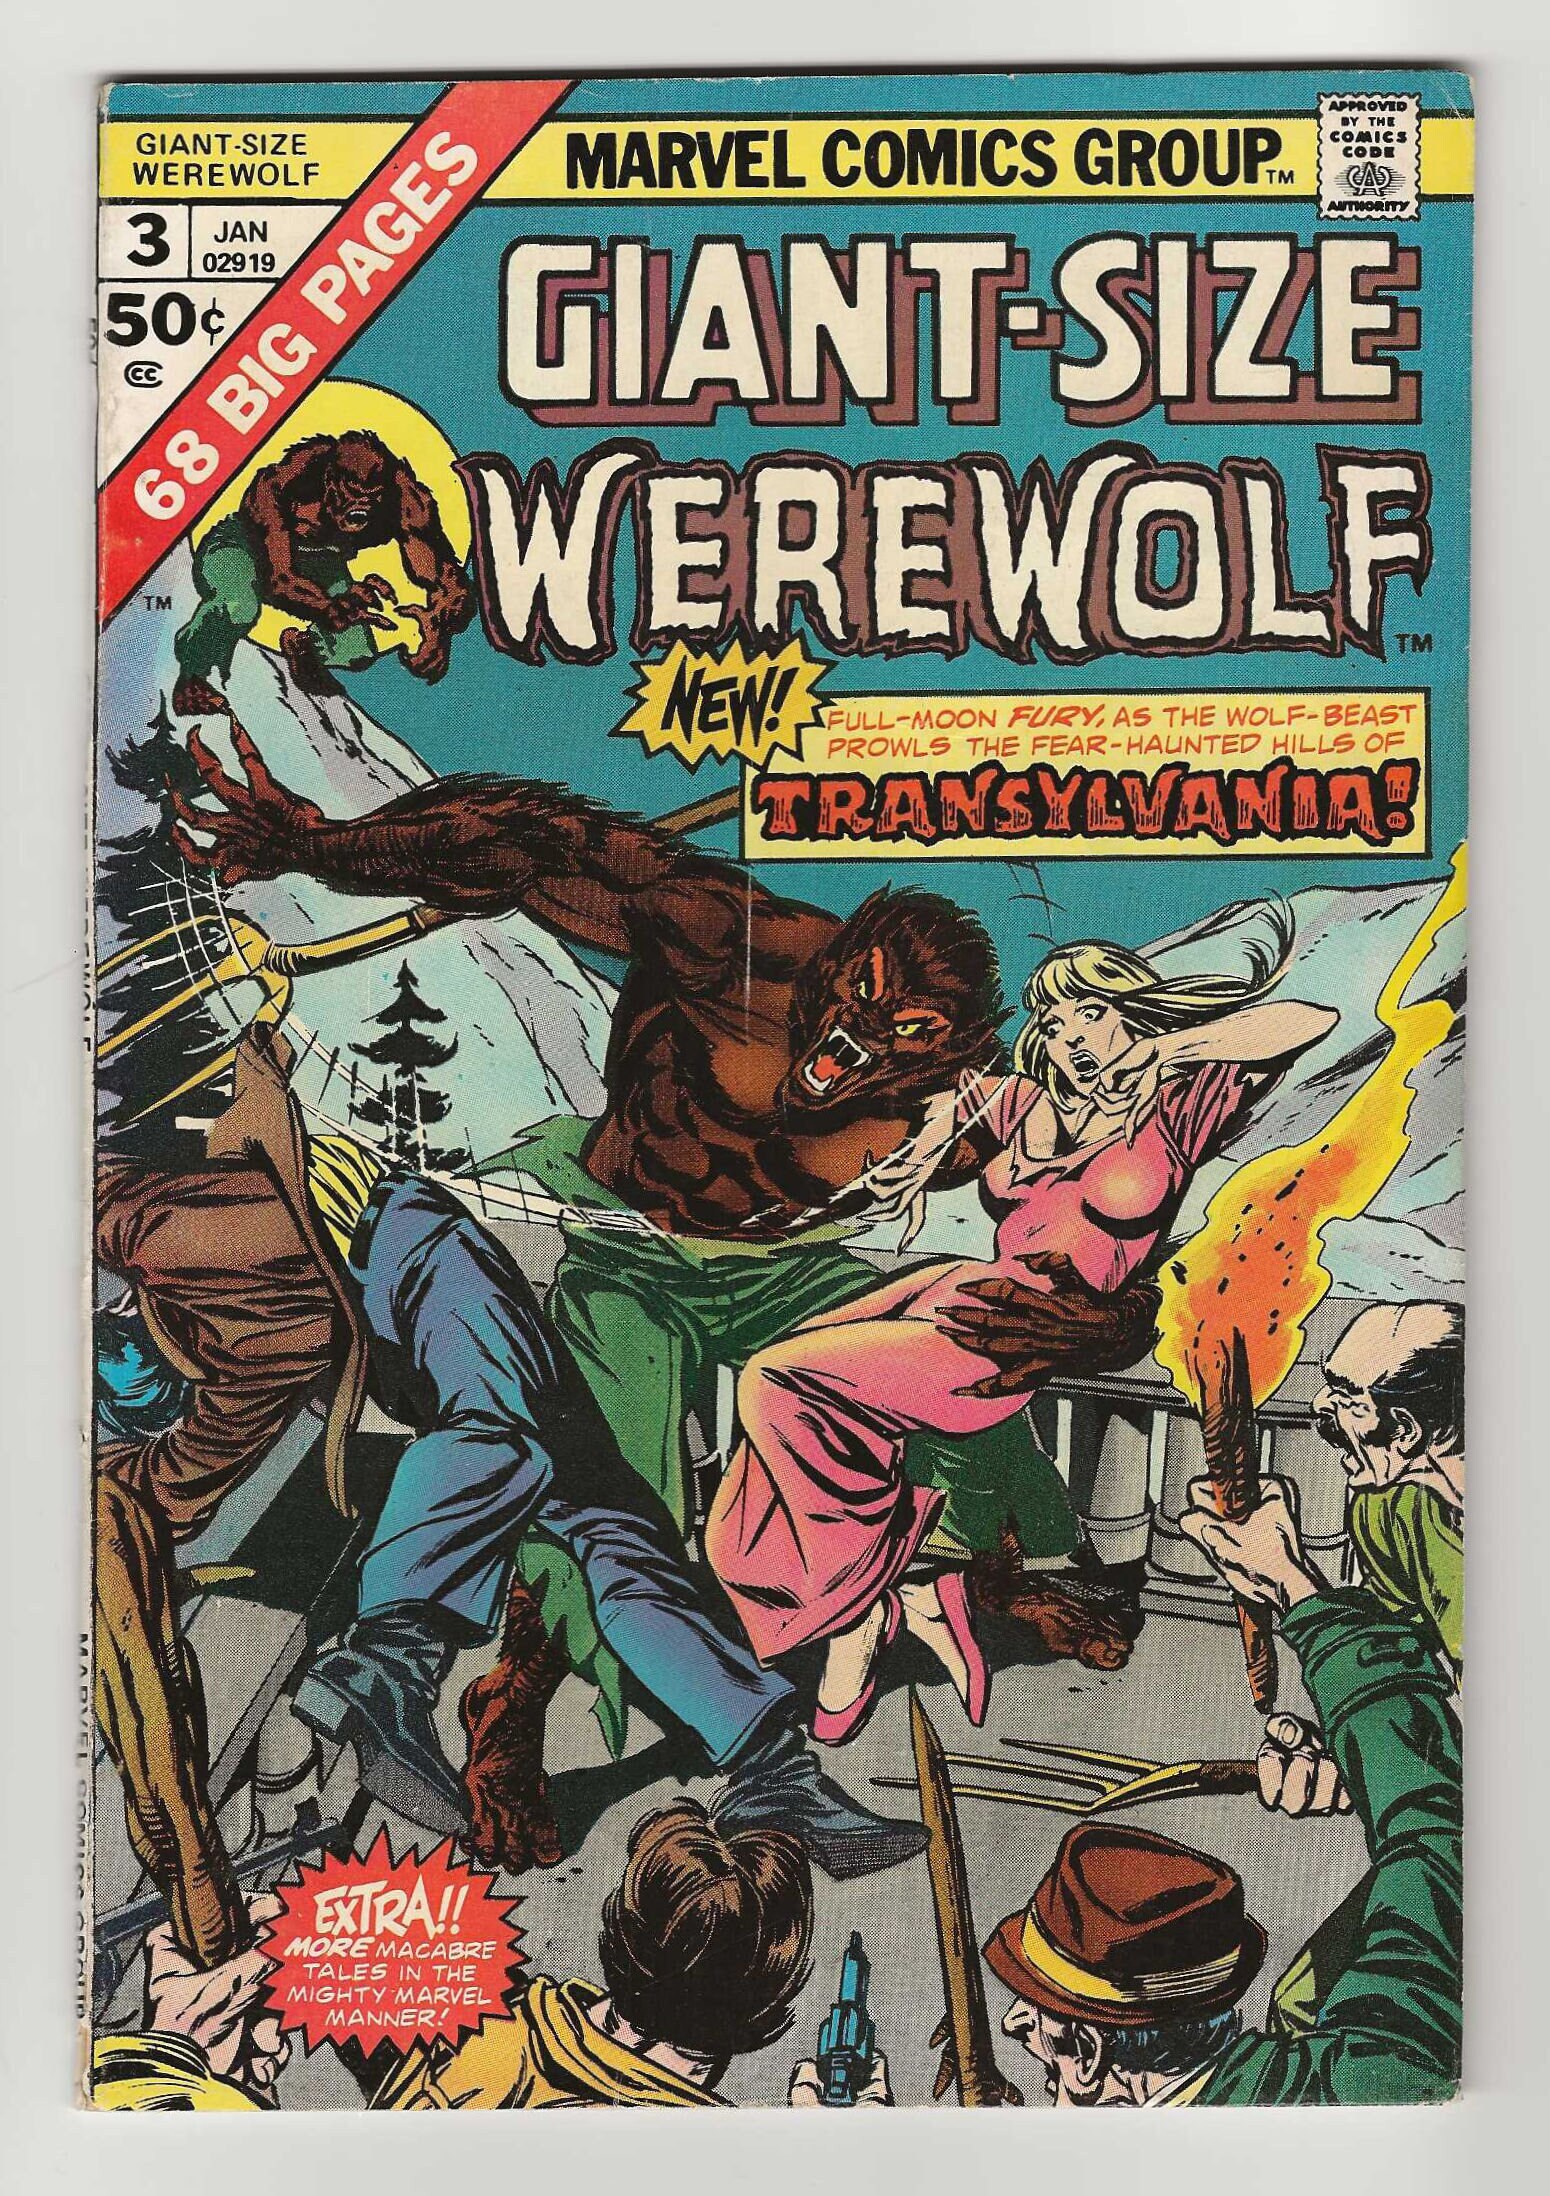 Halloween Thriller Night Werewolf Poster for Sale by loganferret